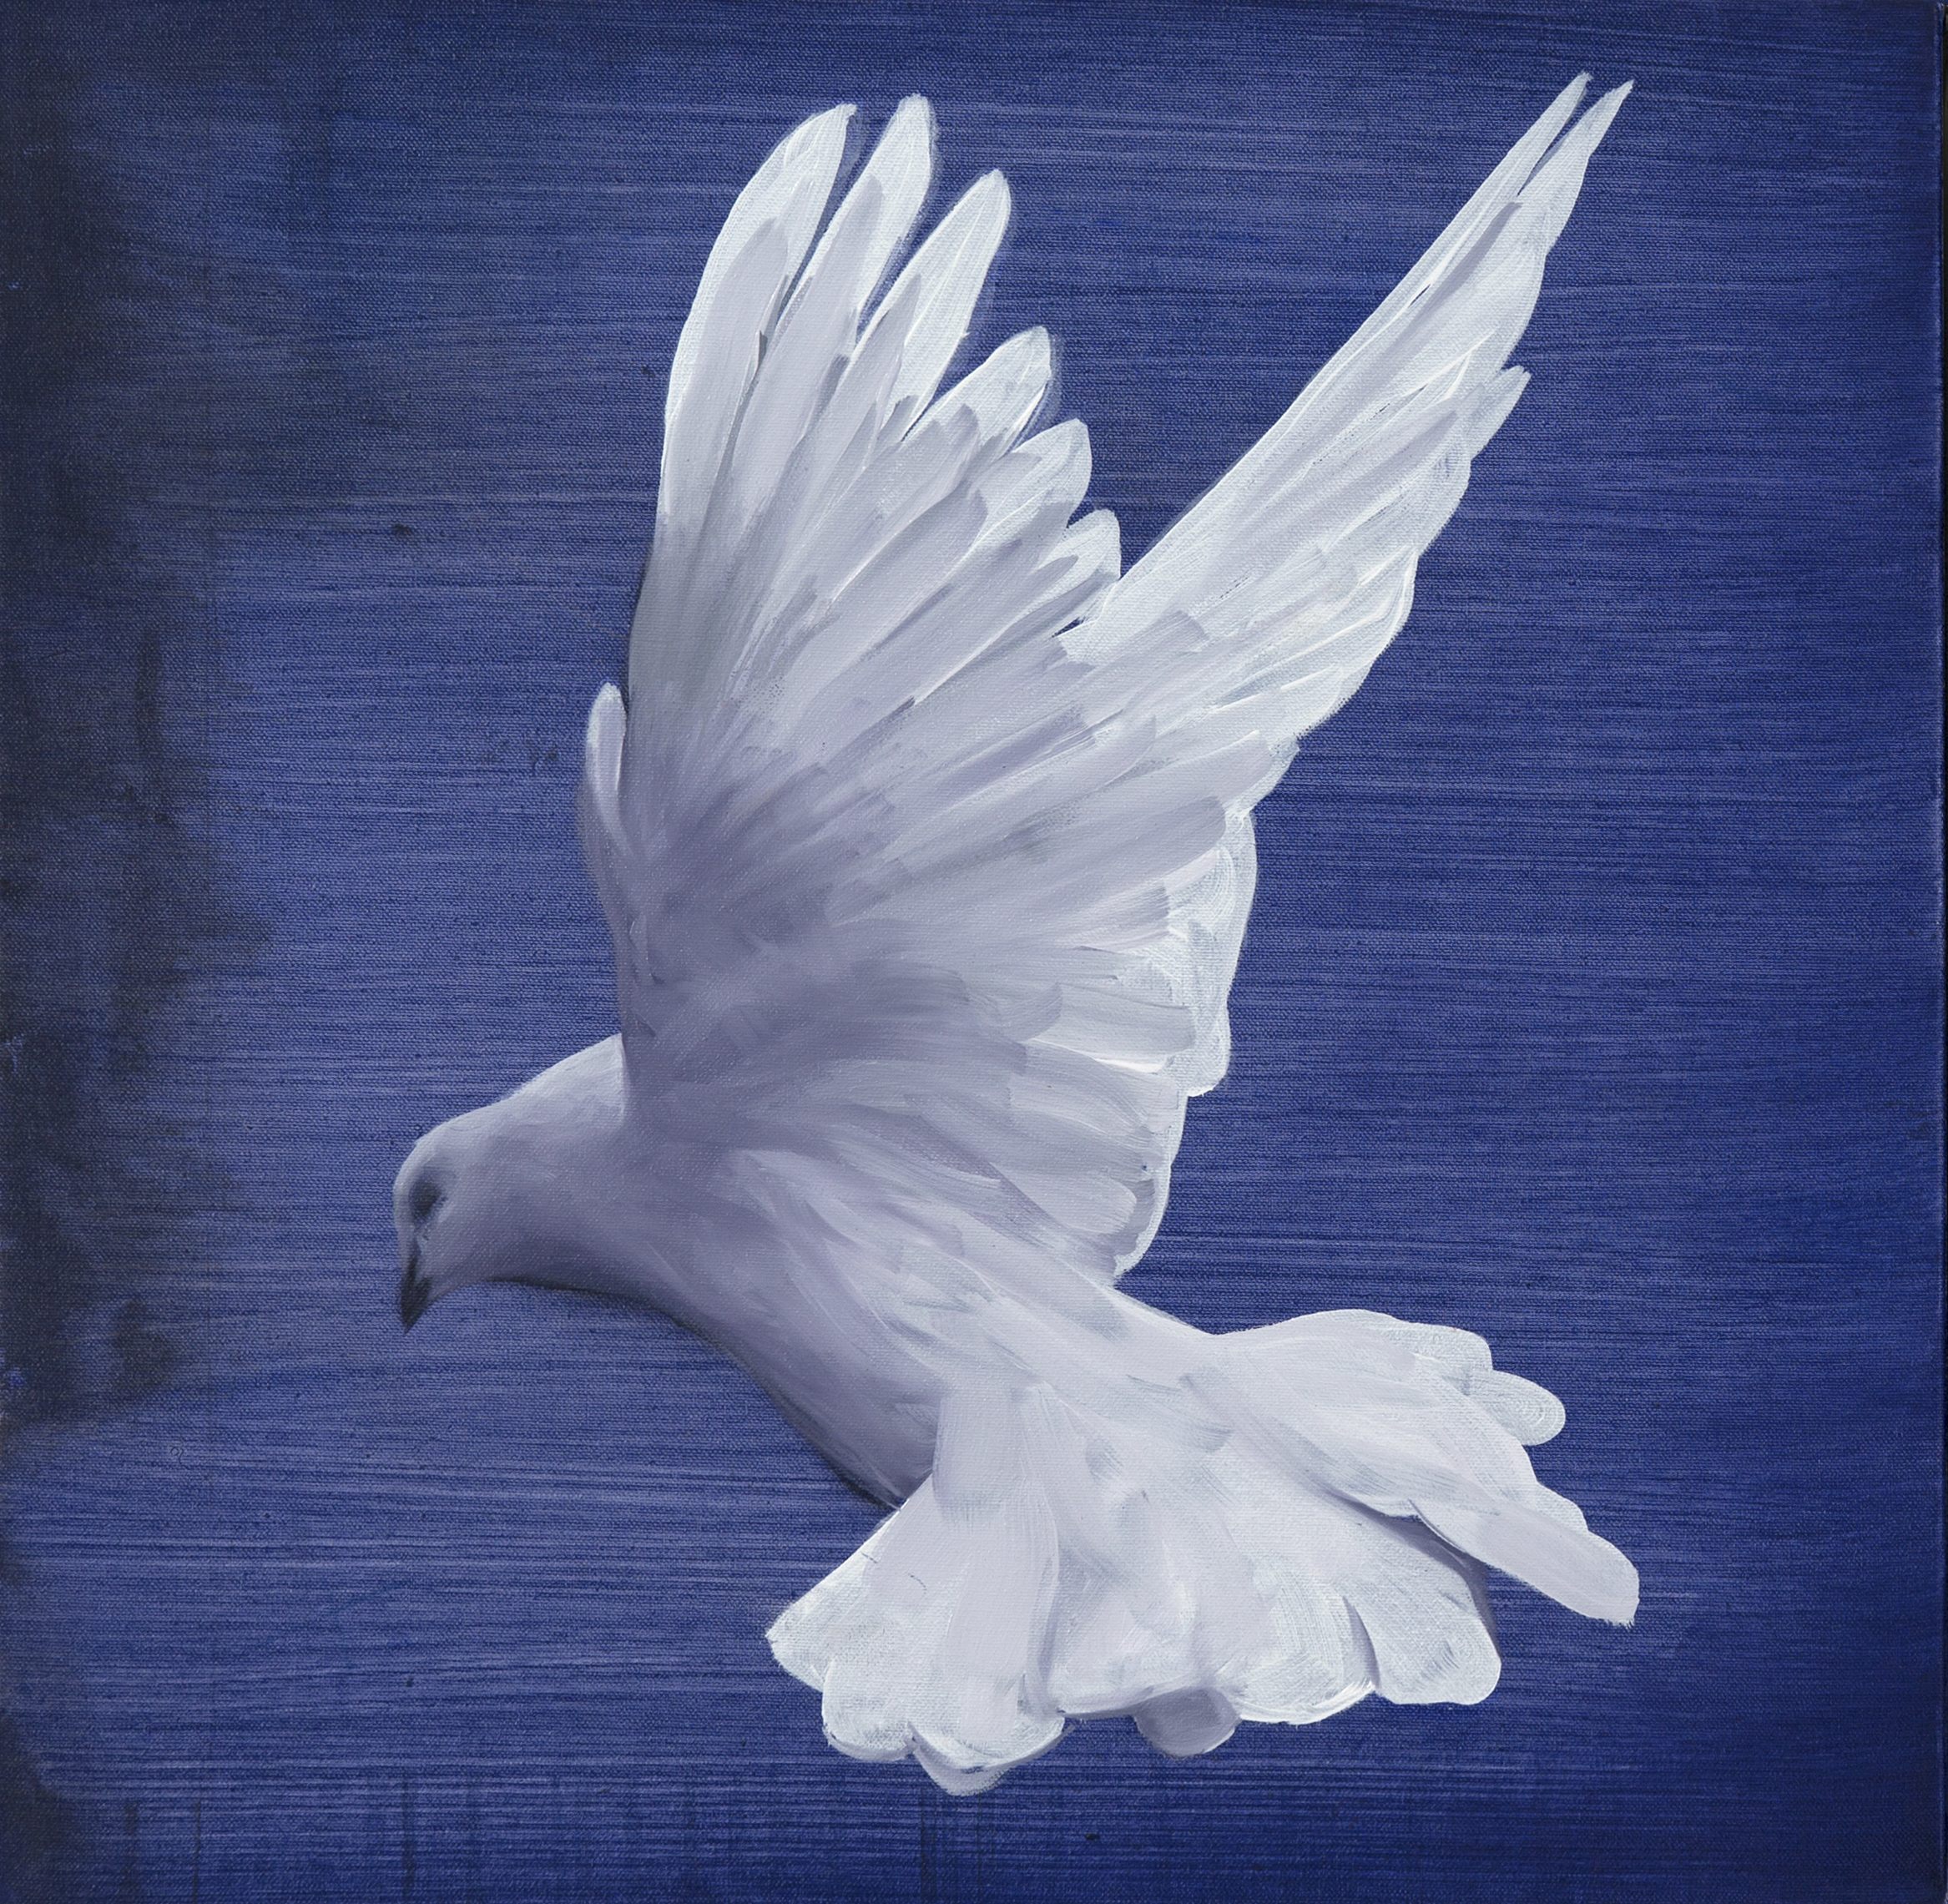 Dove II by Angus McDonald